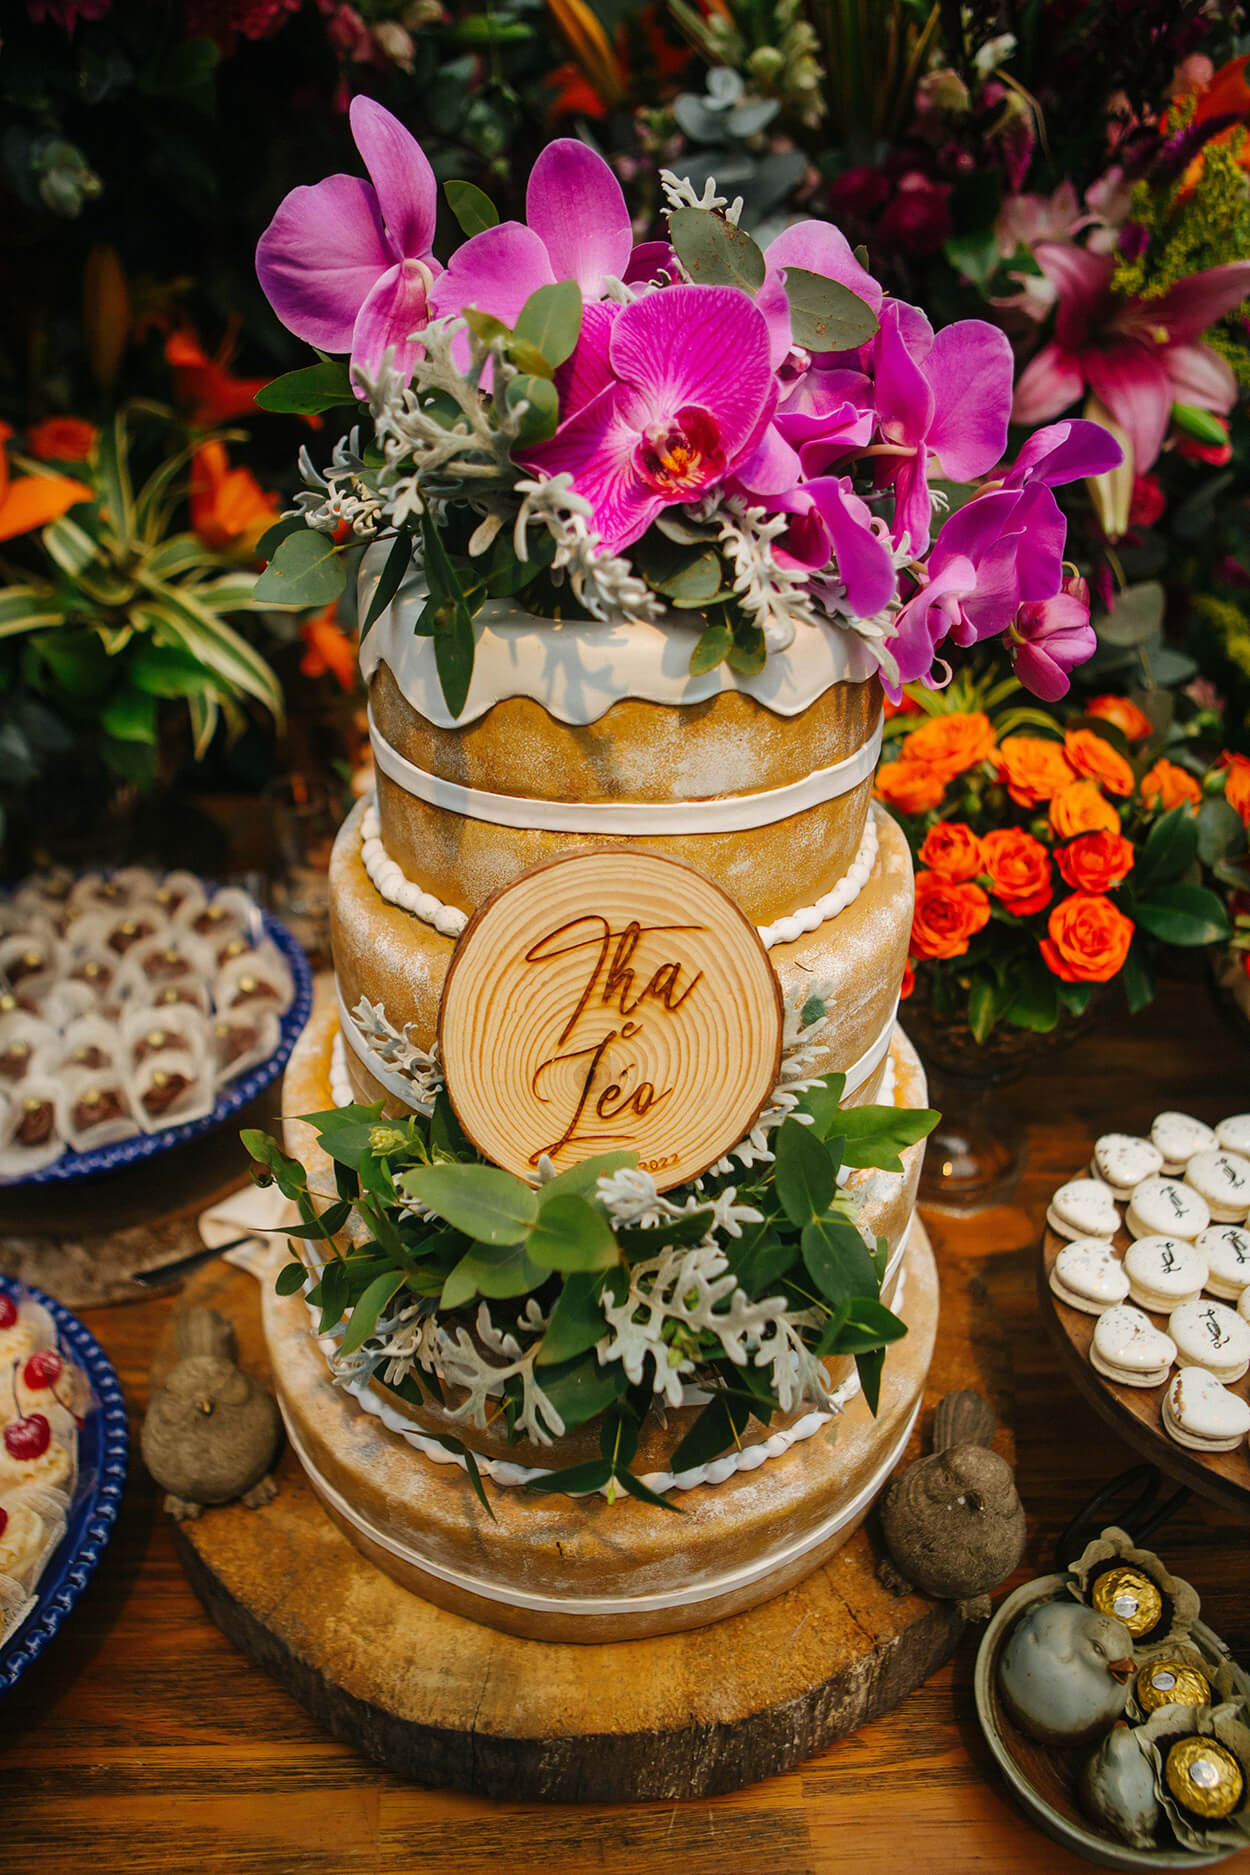 Bolo de casamento naked cake com tres andares plca de madeira com os nomes do noivos e orquideas fucsia